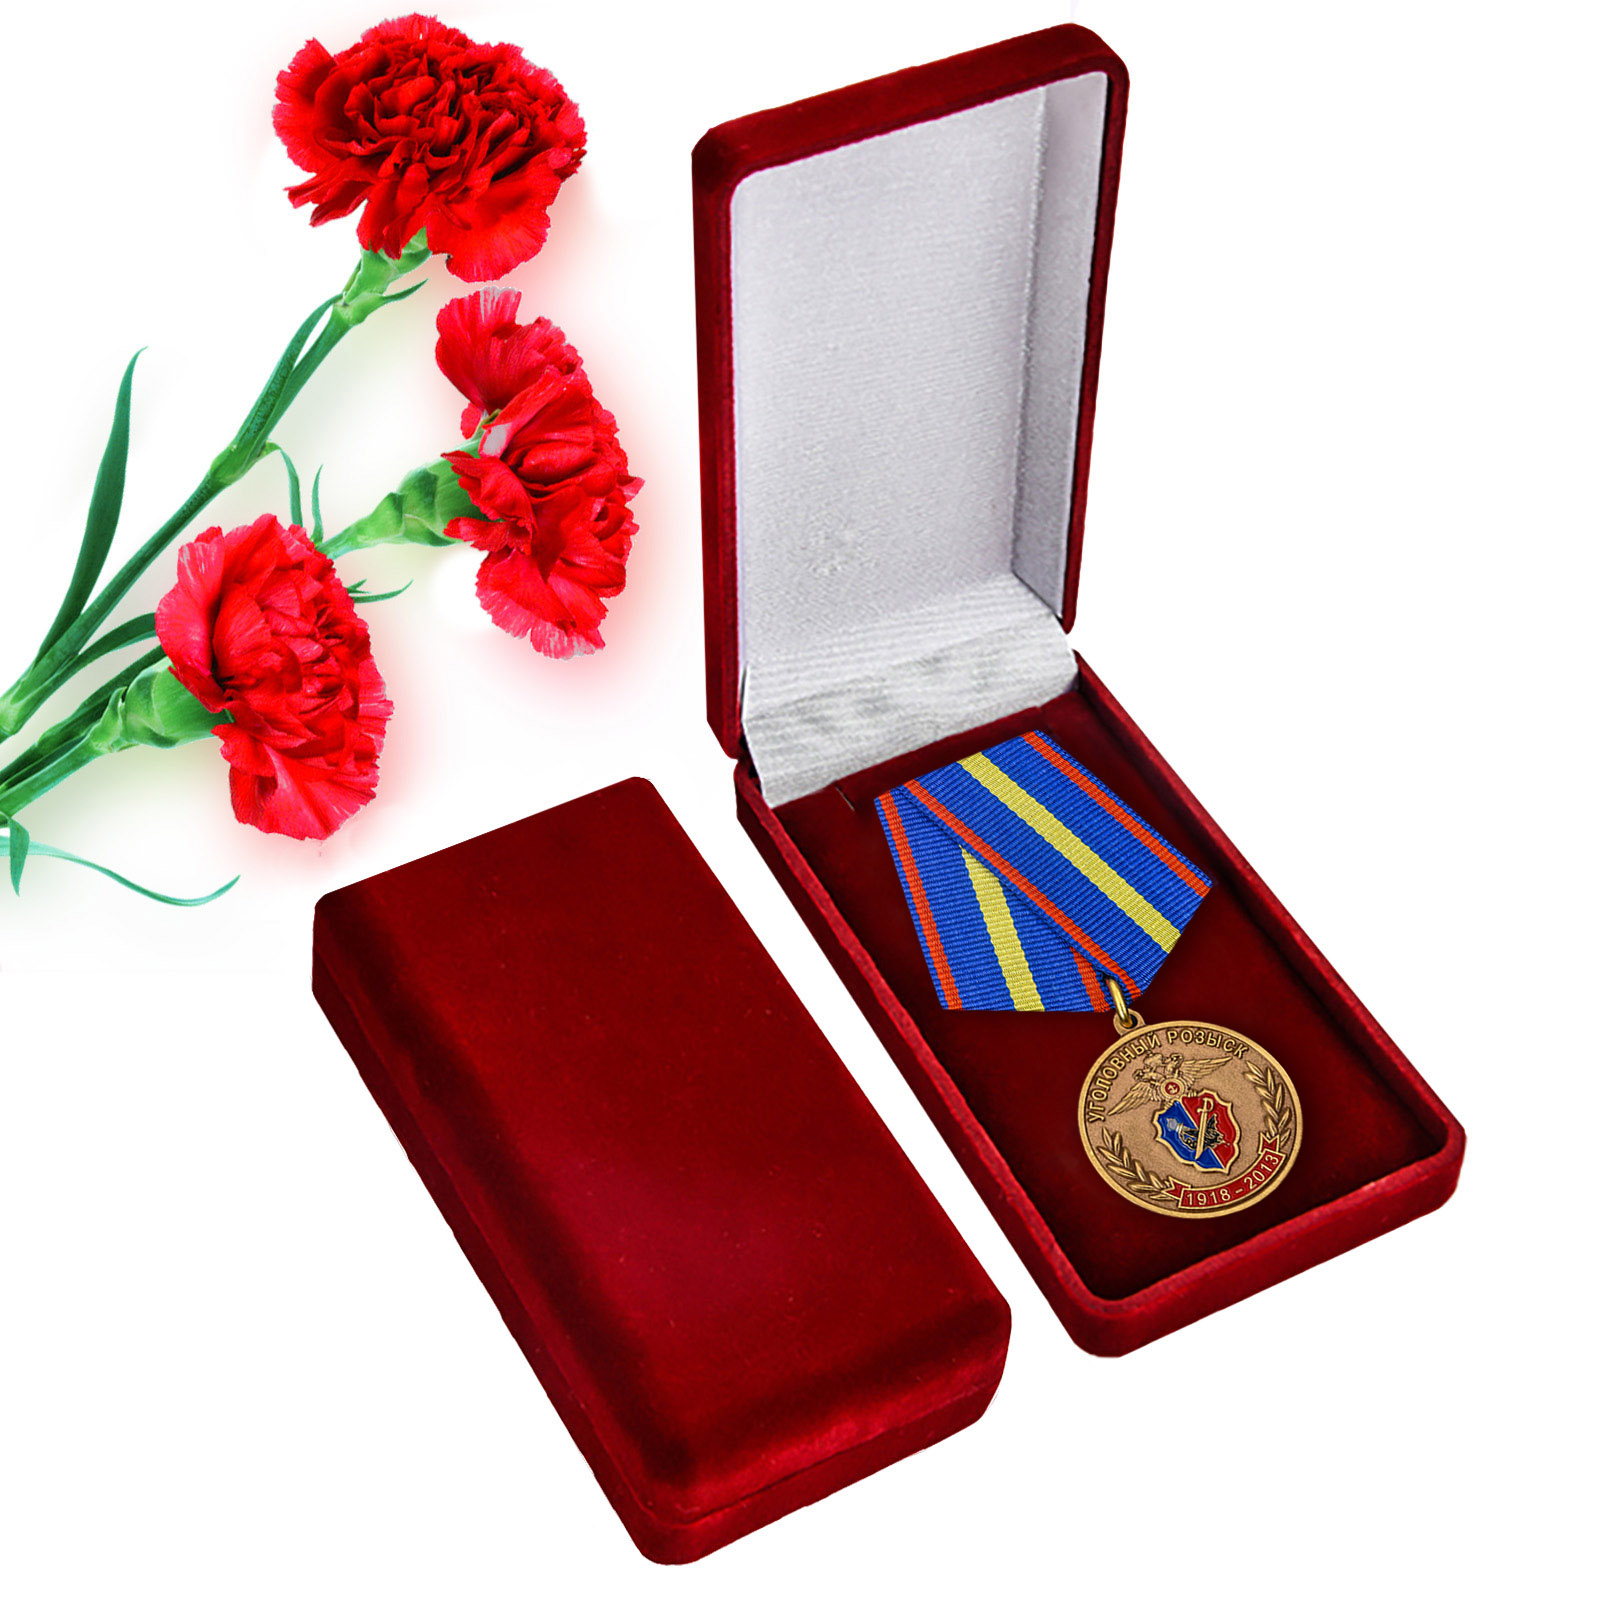 Купить юбилейную медаль 95 лет Уголовному Розыску МВД России онлайн